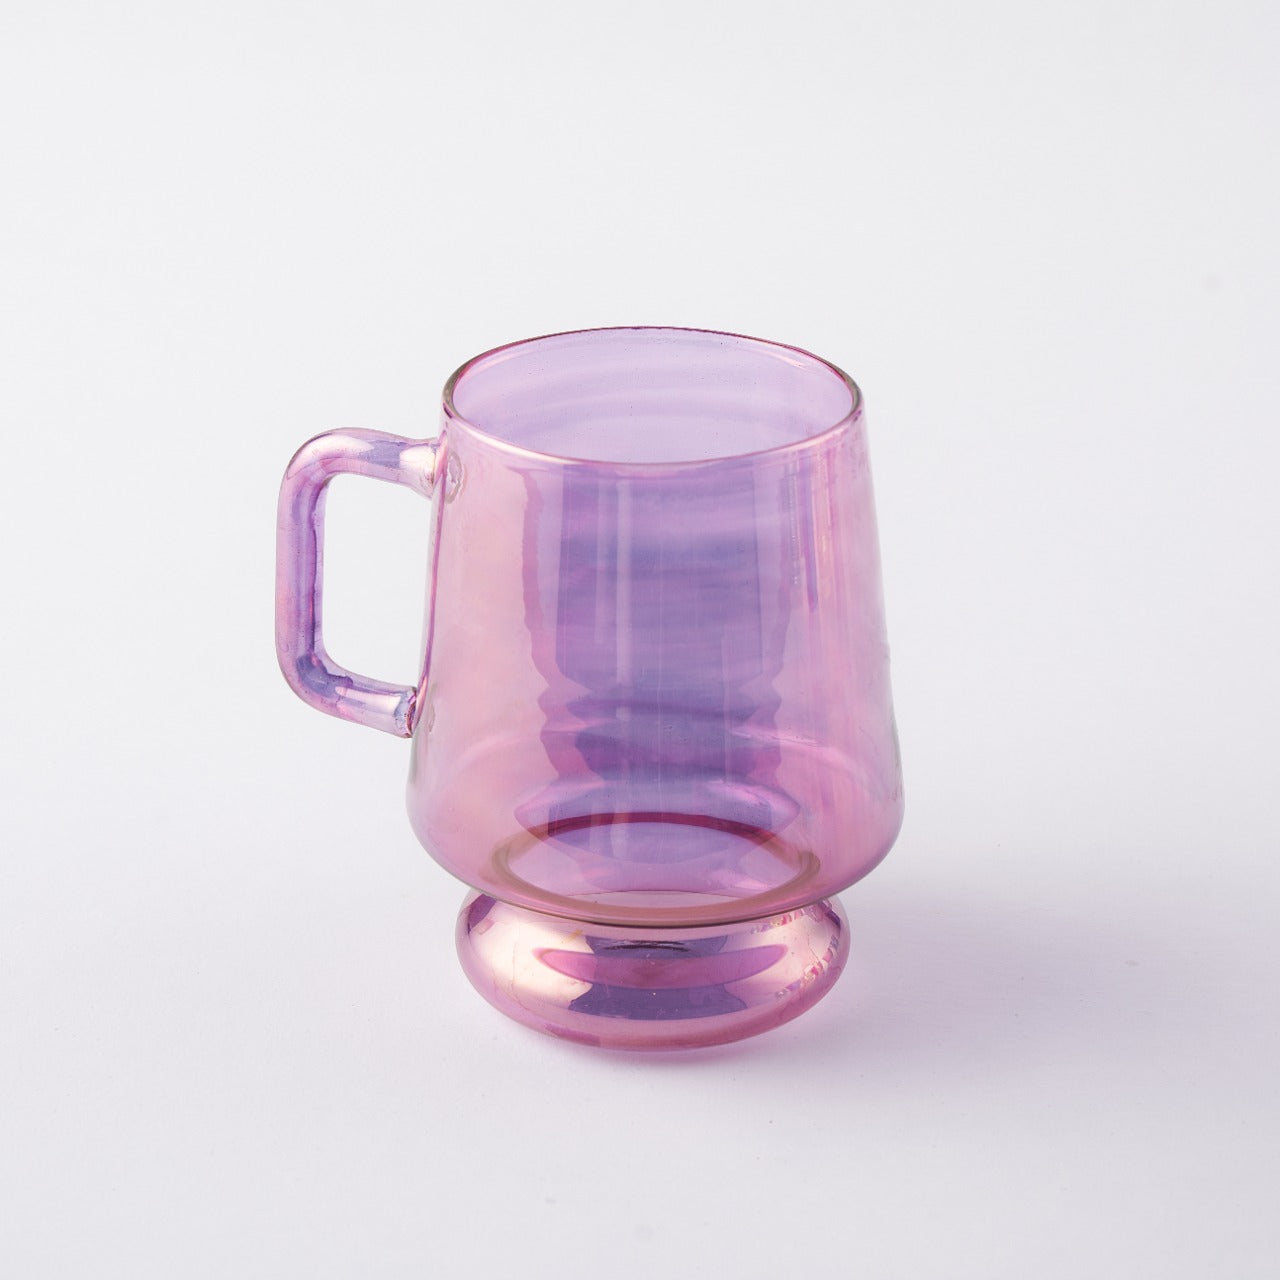 Relando- Hand Blown Glass Mug